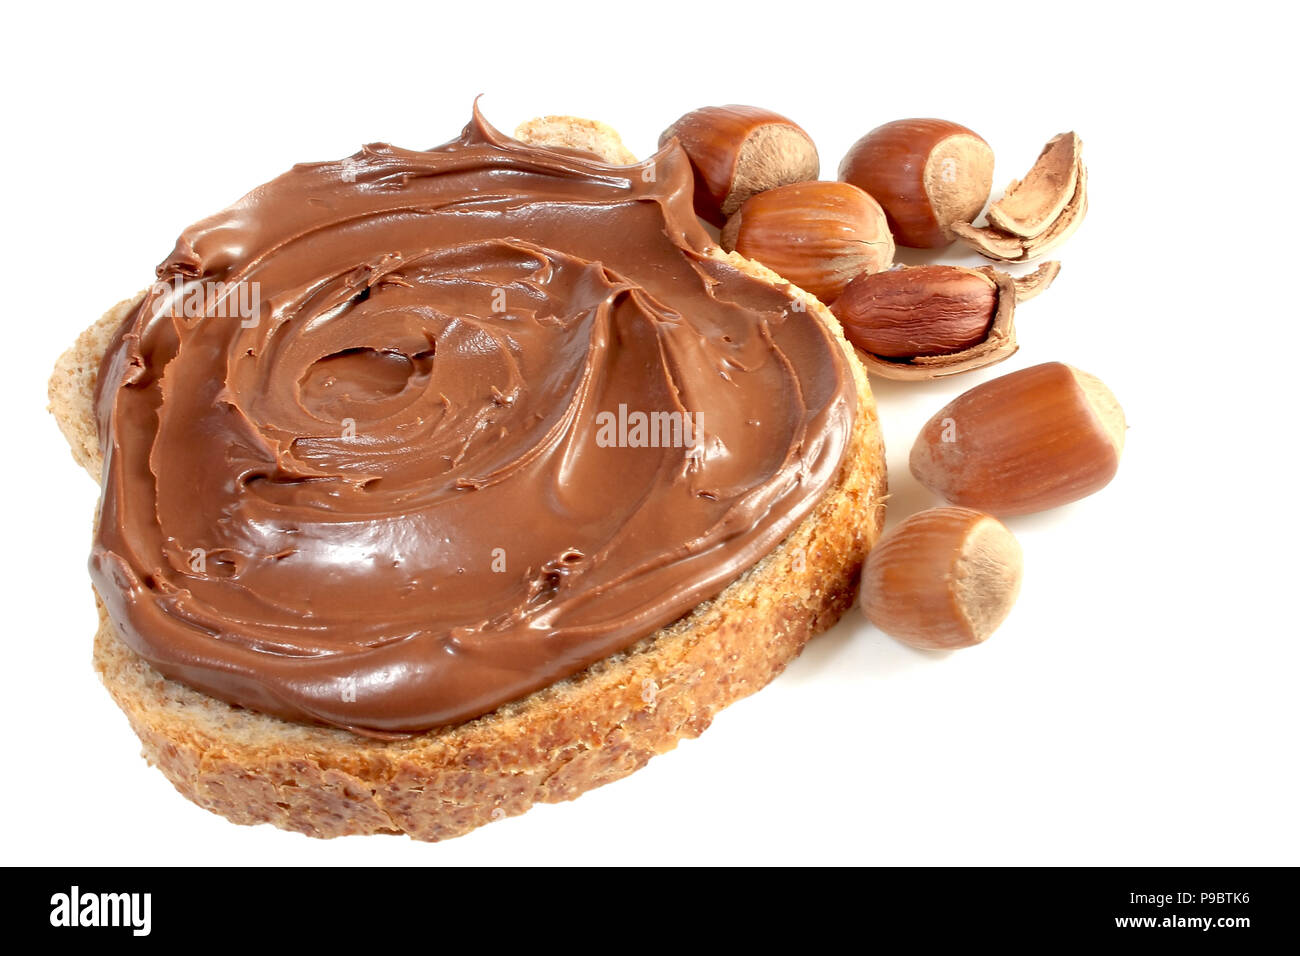 Con Pane e dolci dolci al cioccolato noccioletta isolati su sfondo bianco Foto Stock